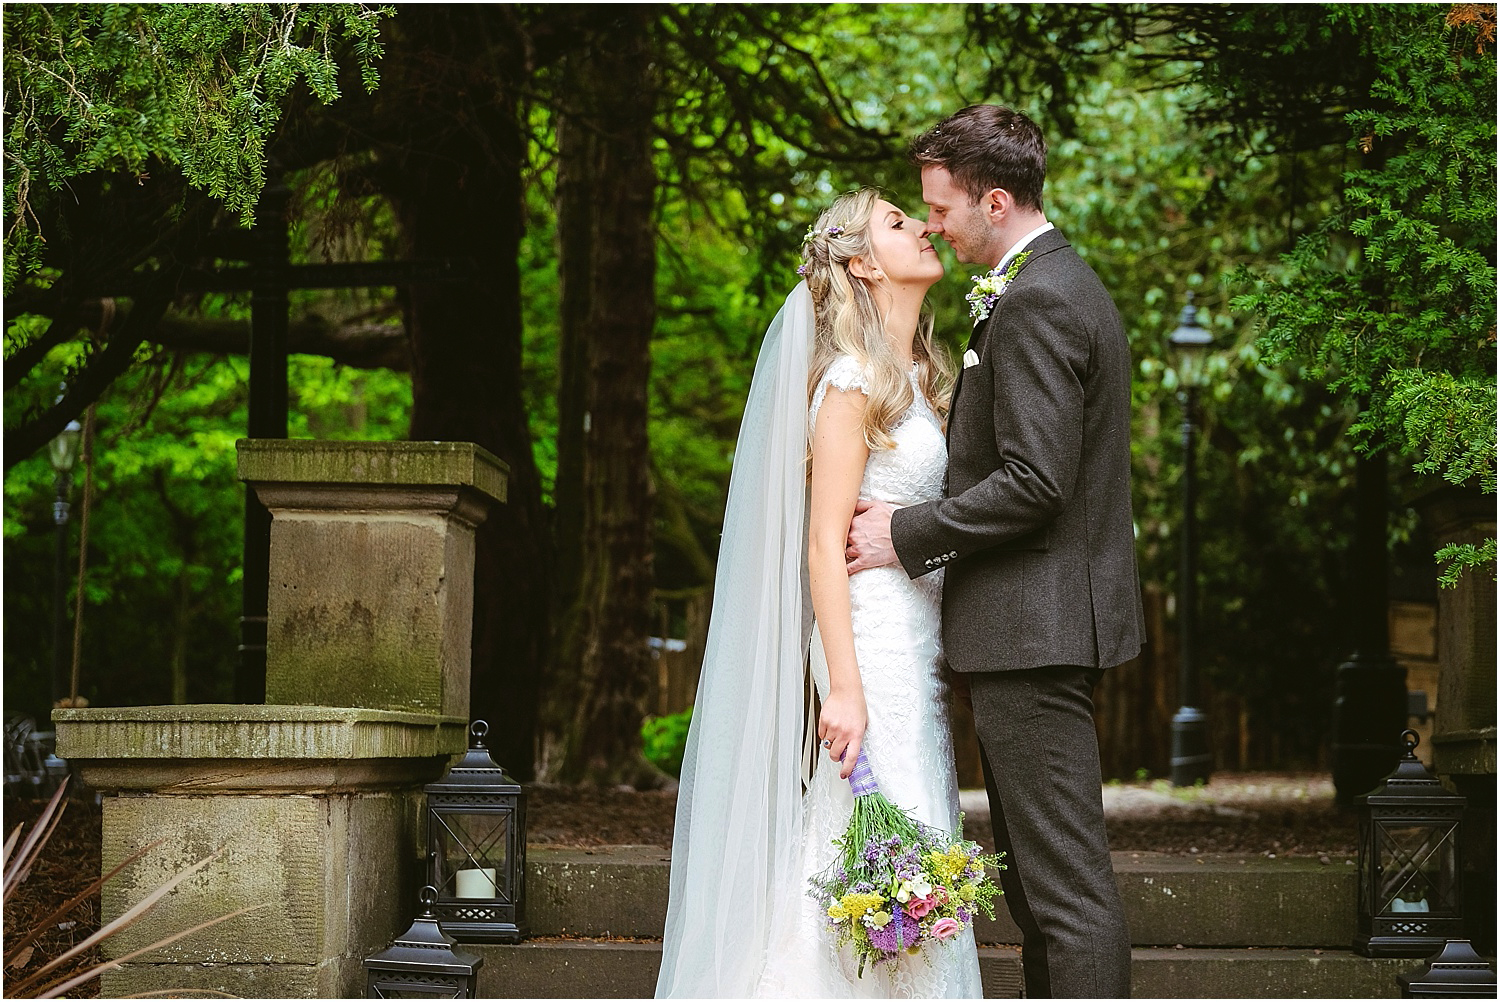 Beamish Hall wedding photography - Laura and Richard_0074.jpg